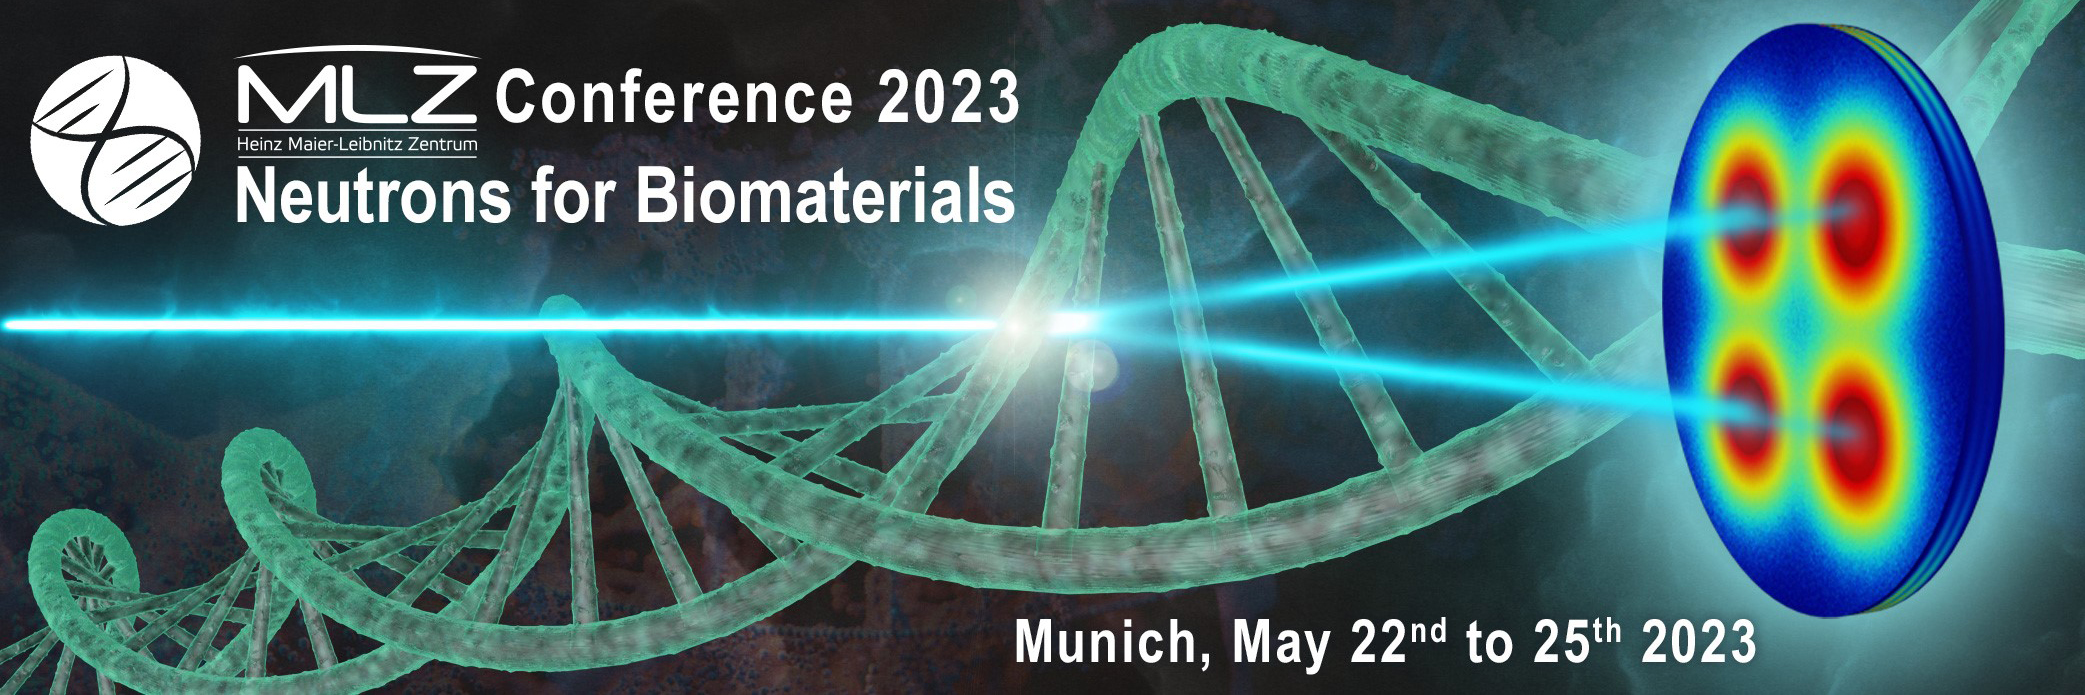 MLZ-Konferenz 2023: Neutronen für Biomaterialien